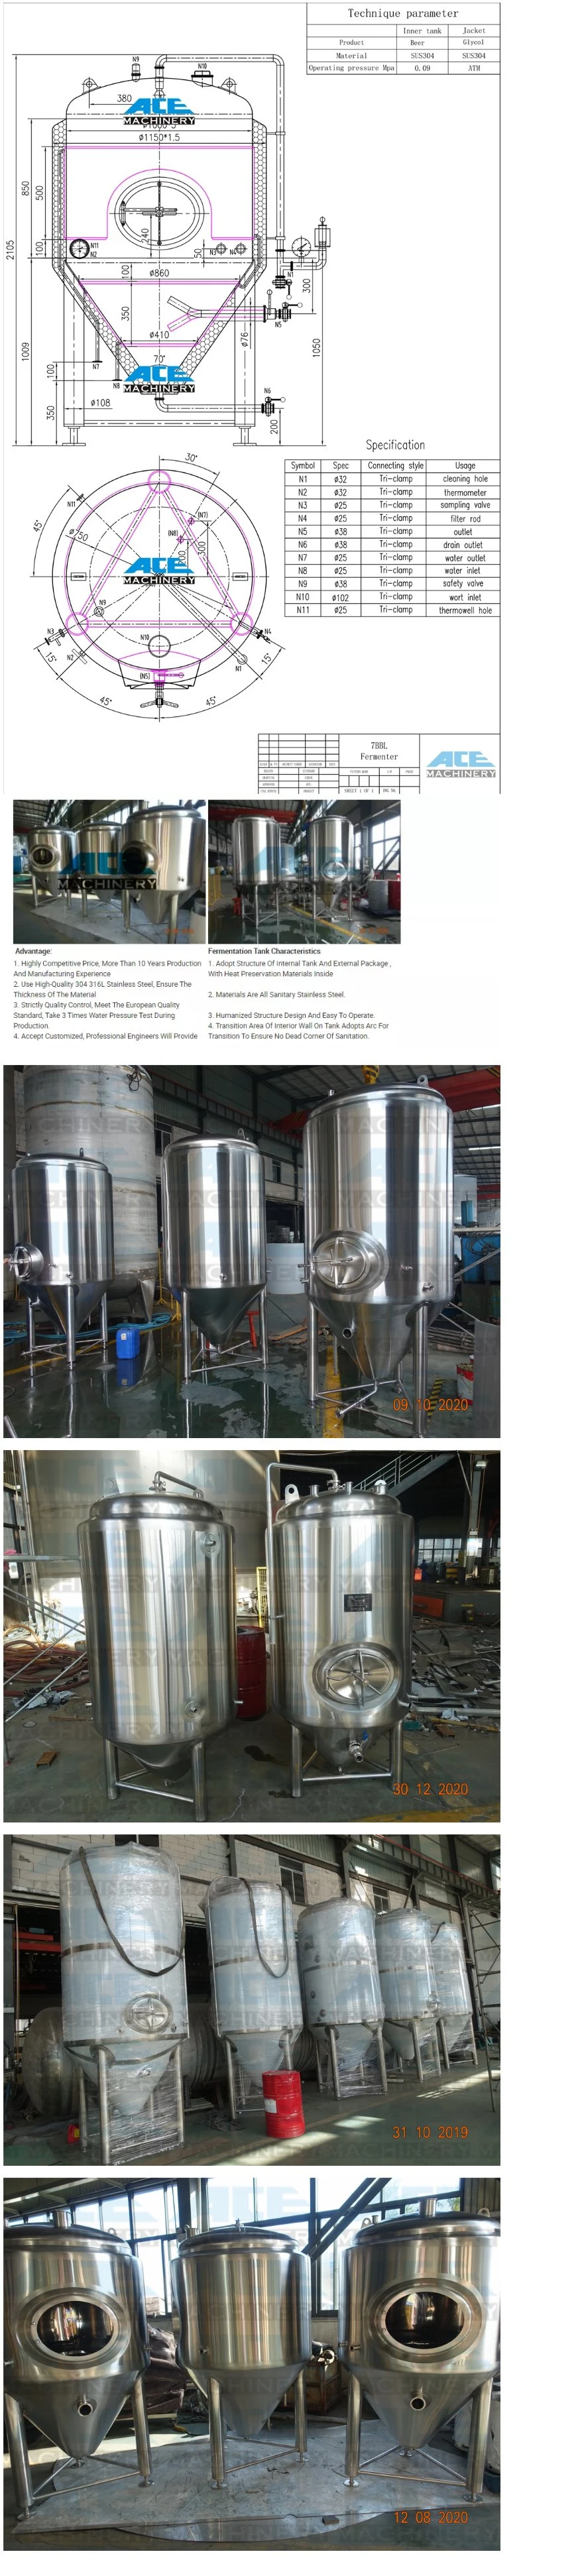 100L 200L 300L 500L 700L 1000L 1500L 2000L Brewing Equipment Micro Brewery Equipment Home Beer Brewery Equipment